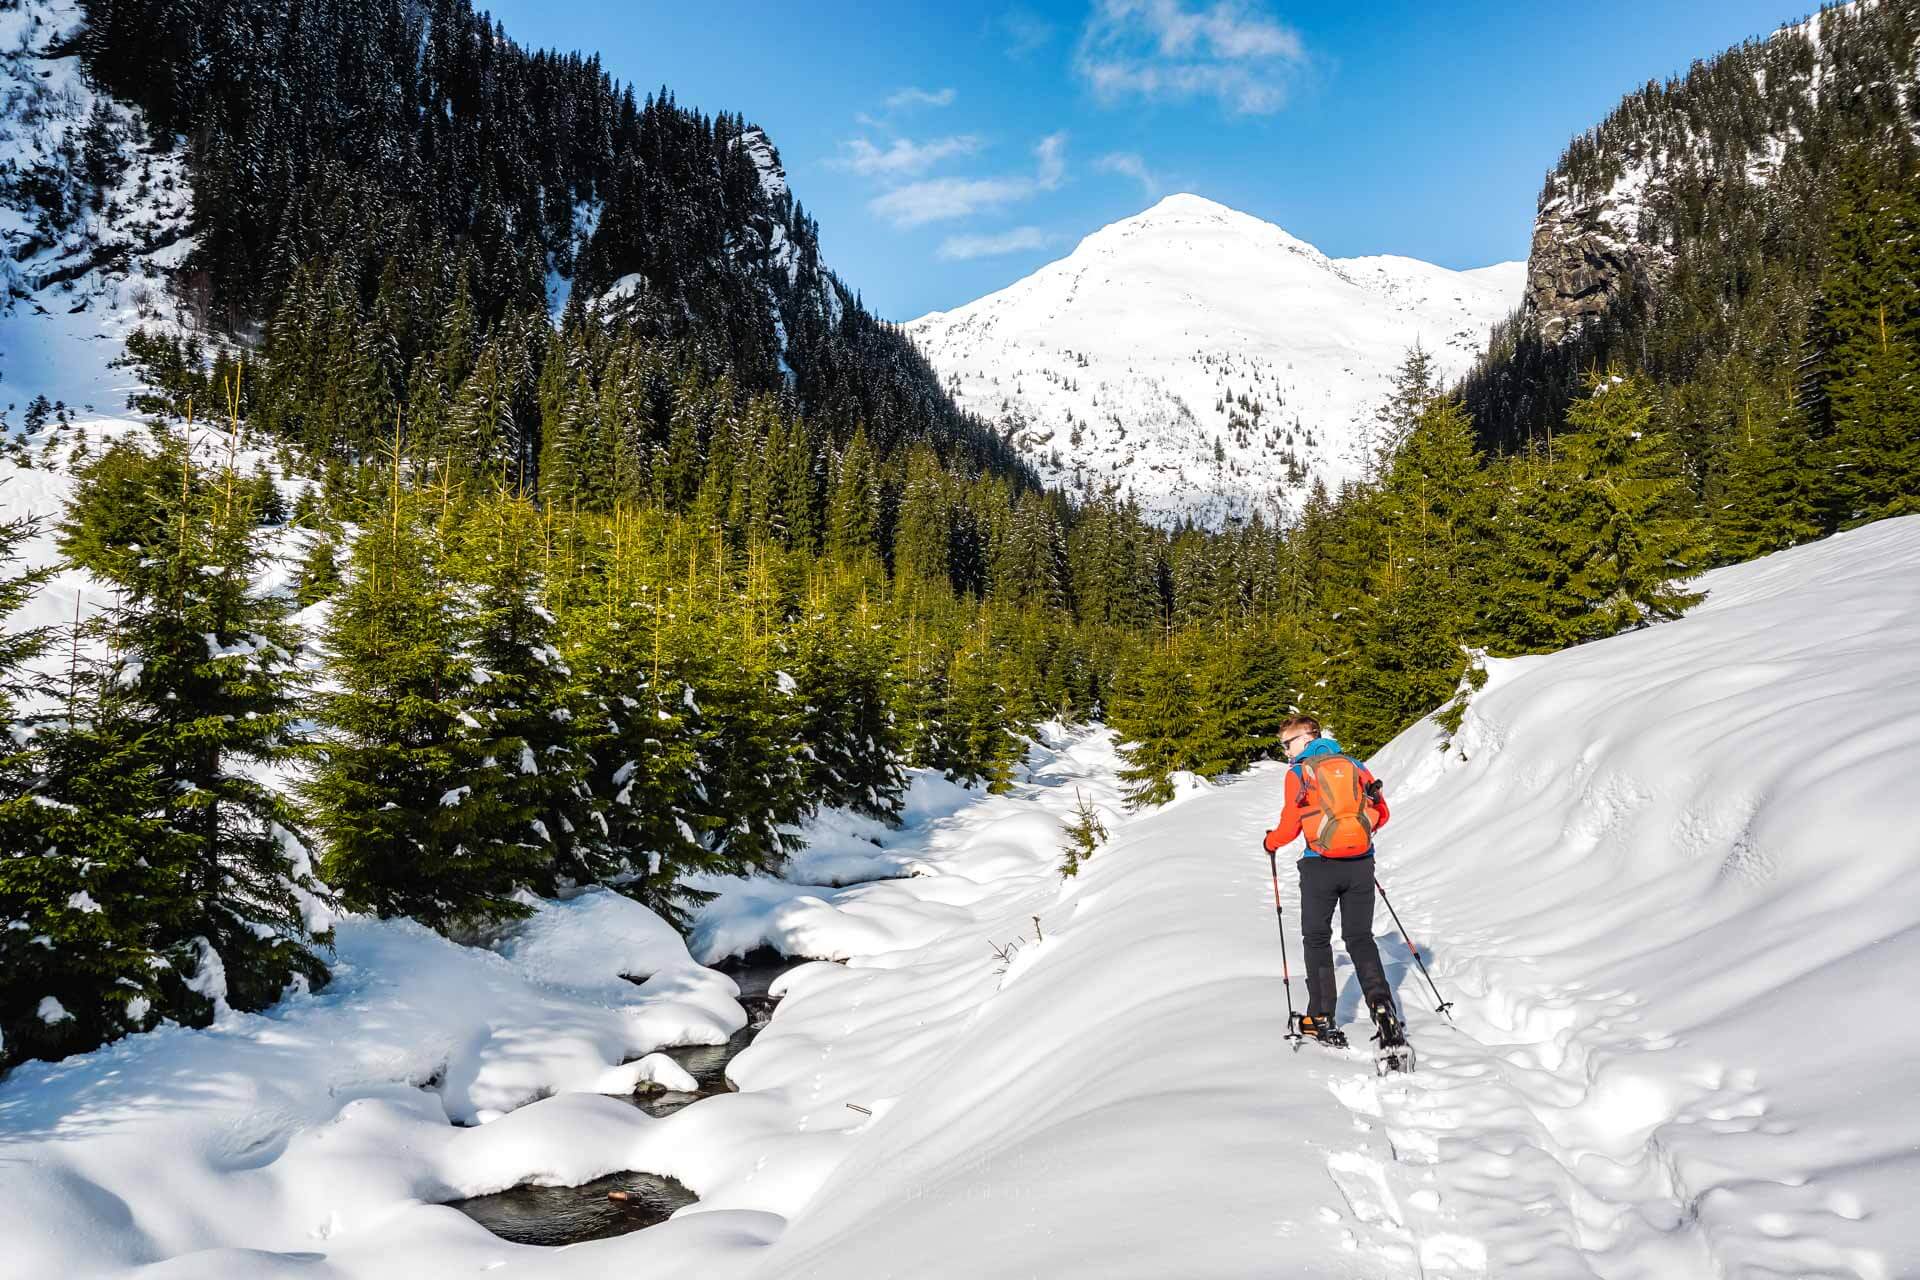 Traseu ușor și scurt de drumeție de iarnă în Munții Făgăraș: de la Piscu Negru pe Valea Paltinu. Marcaj punct albastru / triunghi albastru